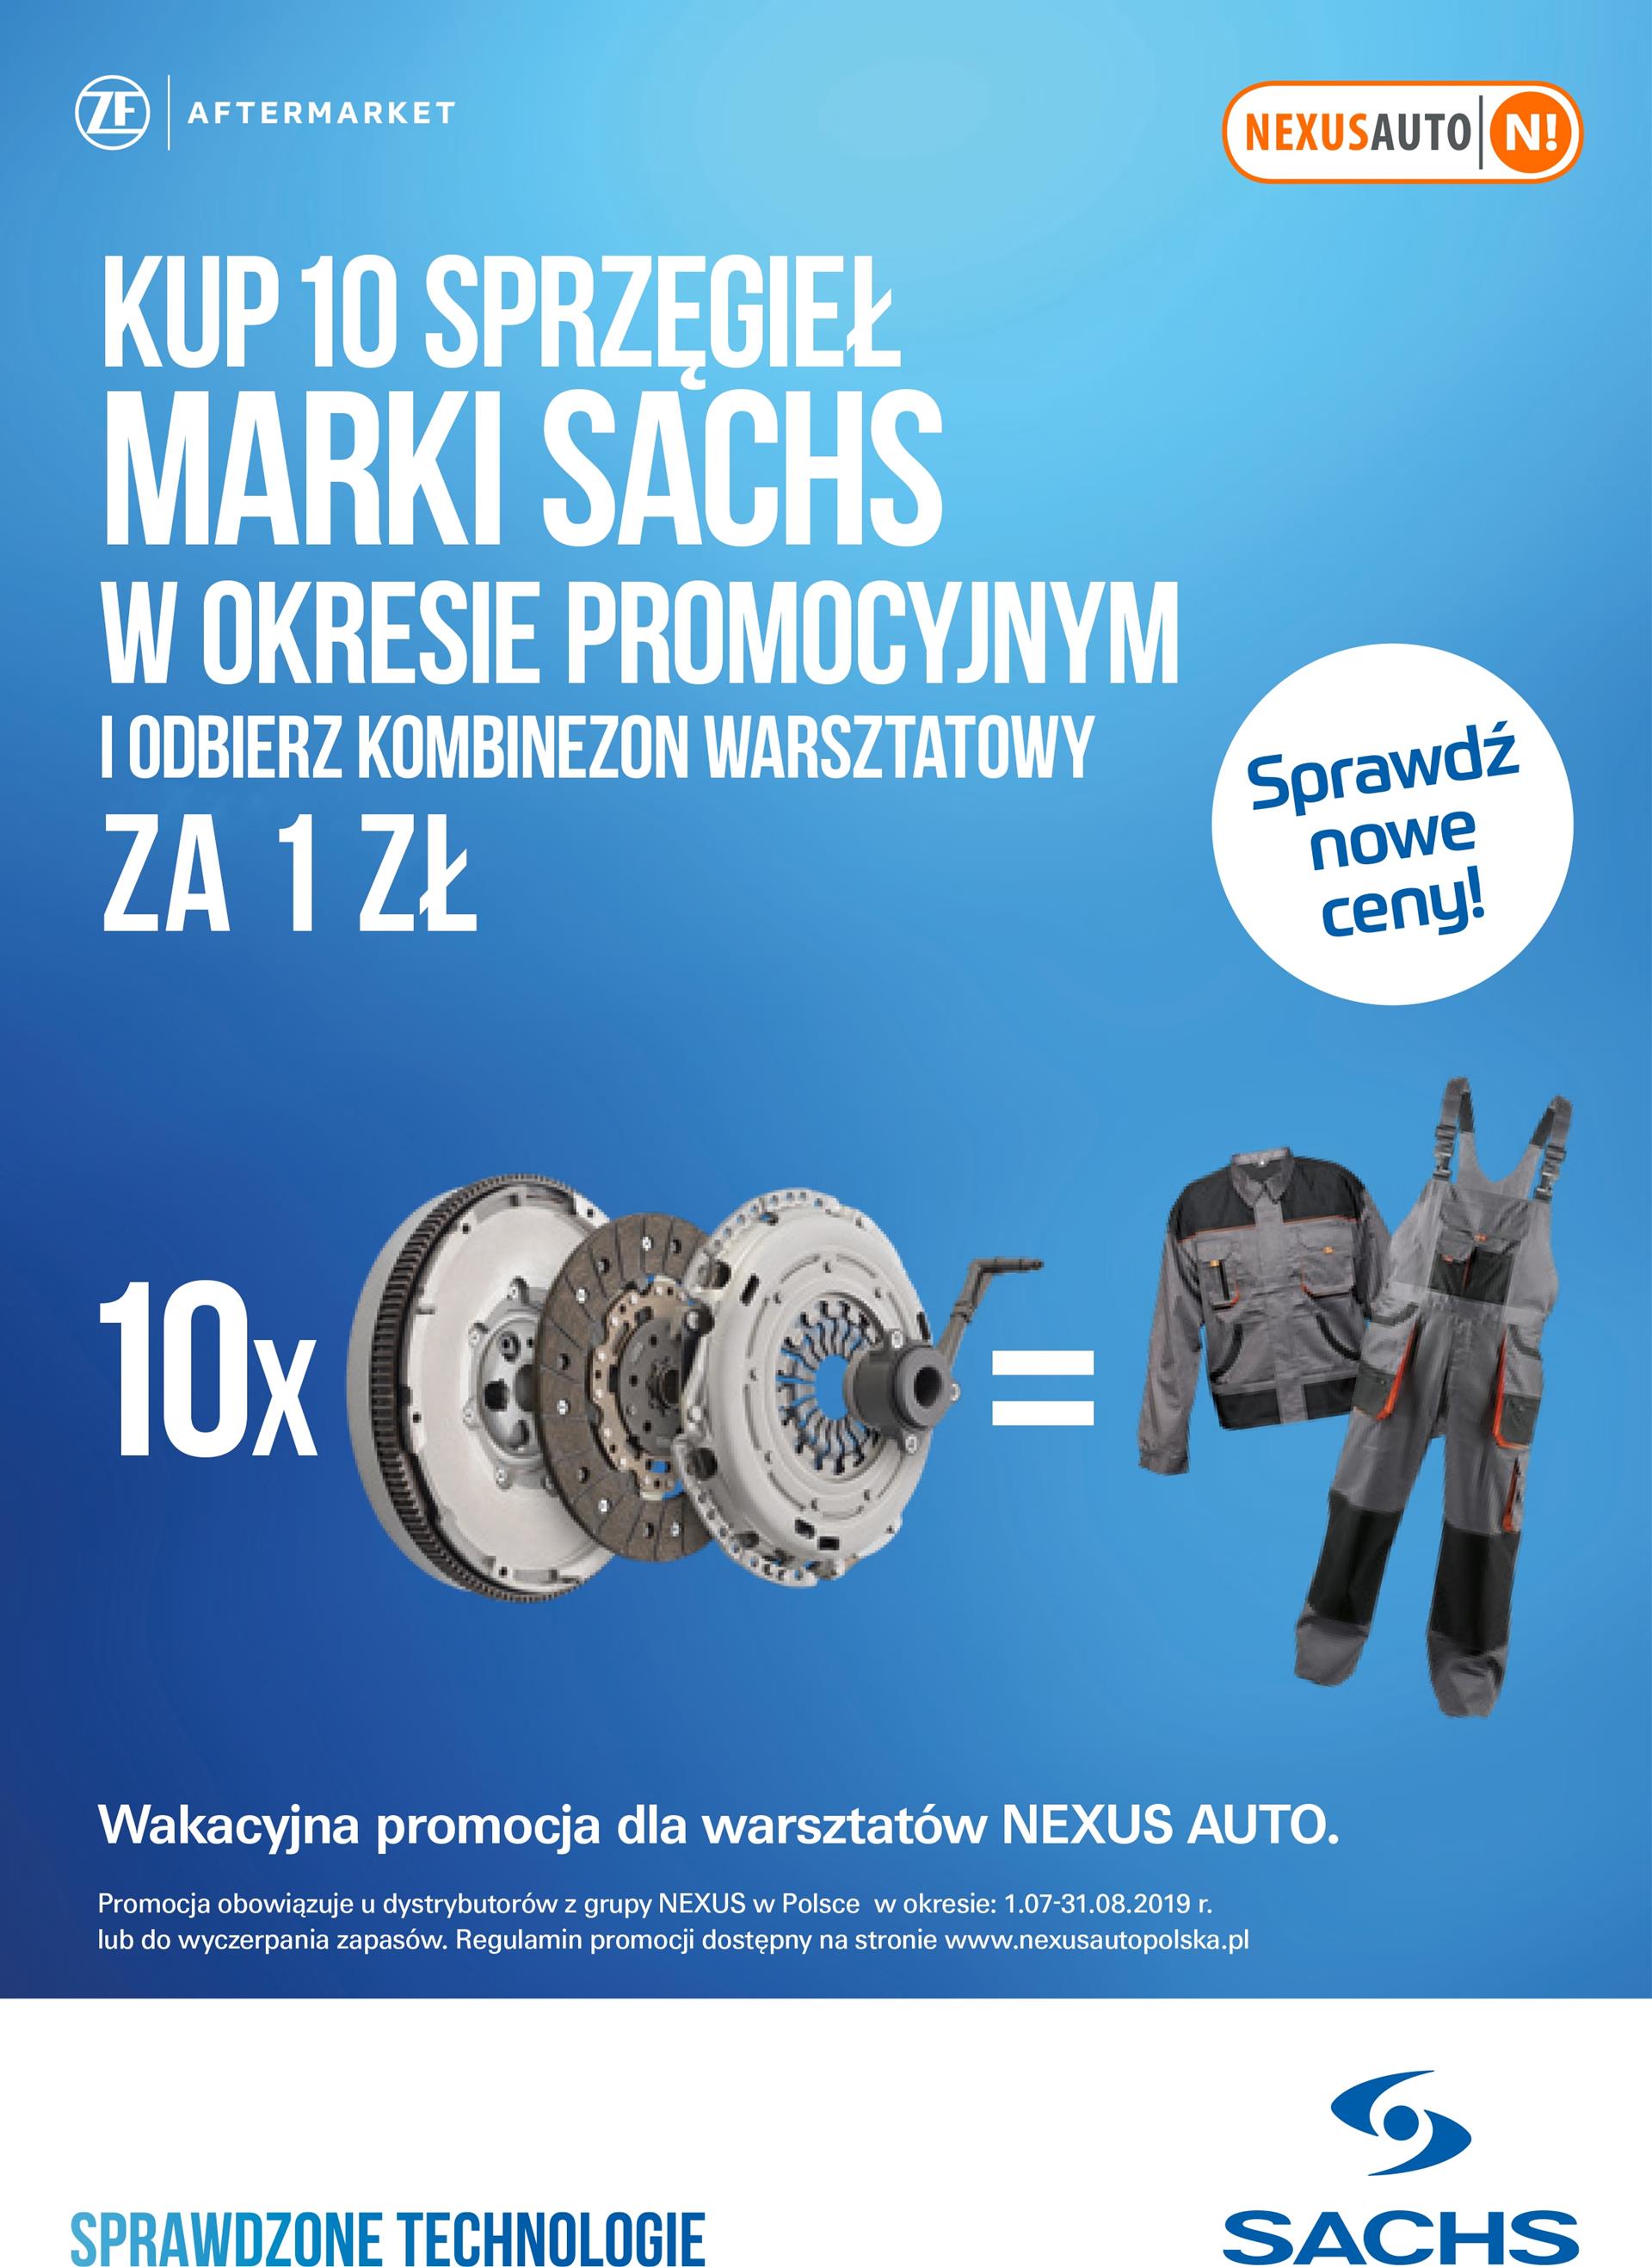 Wakacyjna promocja Sachs dla warsztatów Nexus Auto